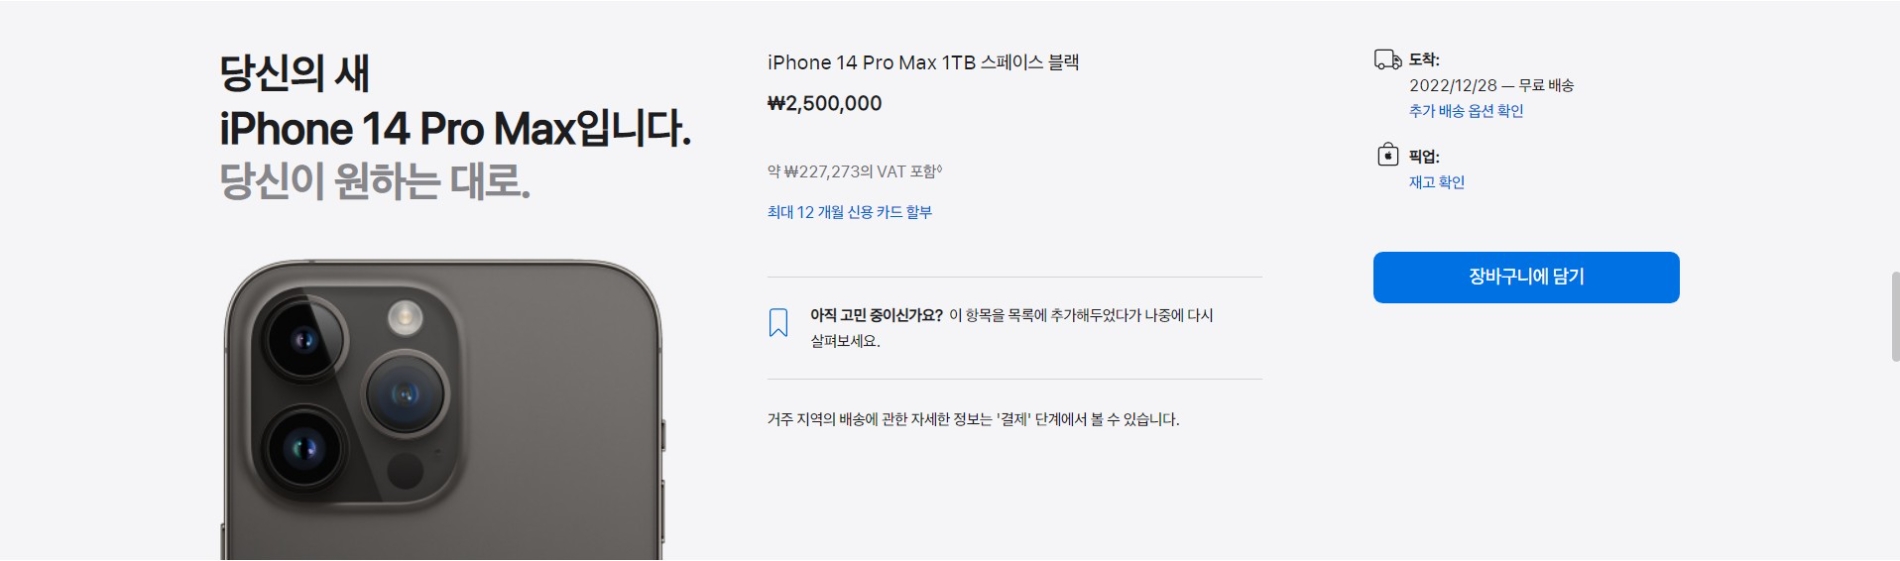 애플은 29일 아이폰14 프로맥스를 주문할 경우 내달 28일에 배송 받을 수 있다고 안내하고 있다. 2022.11.29/사진=애플 공식 온라인스토어 갈무리